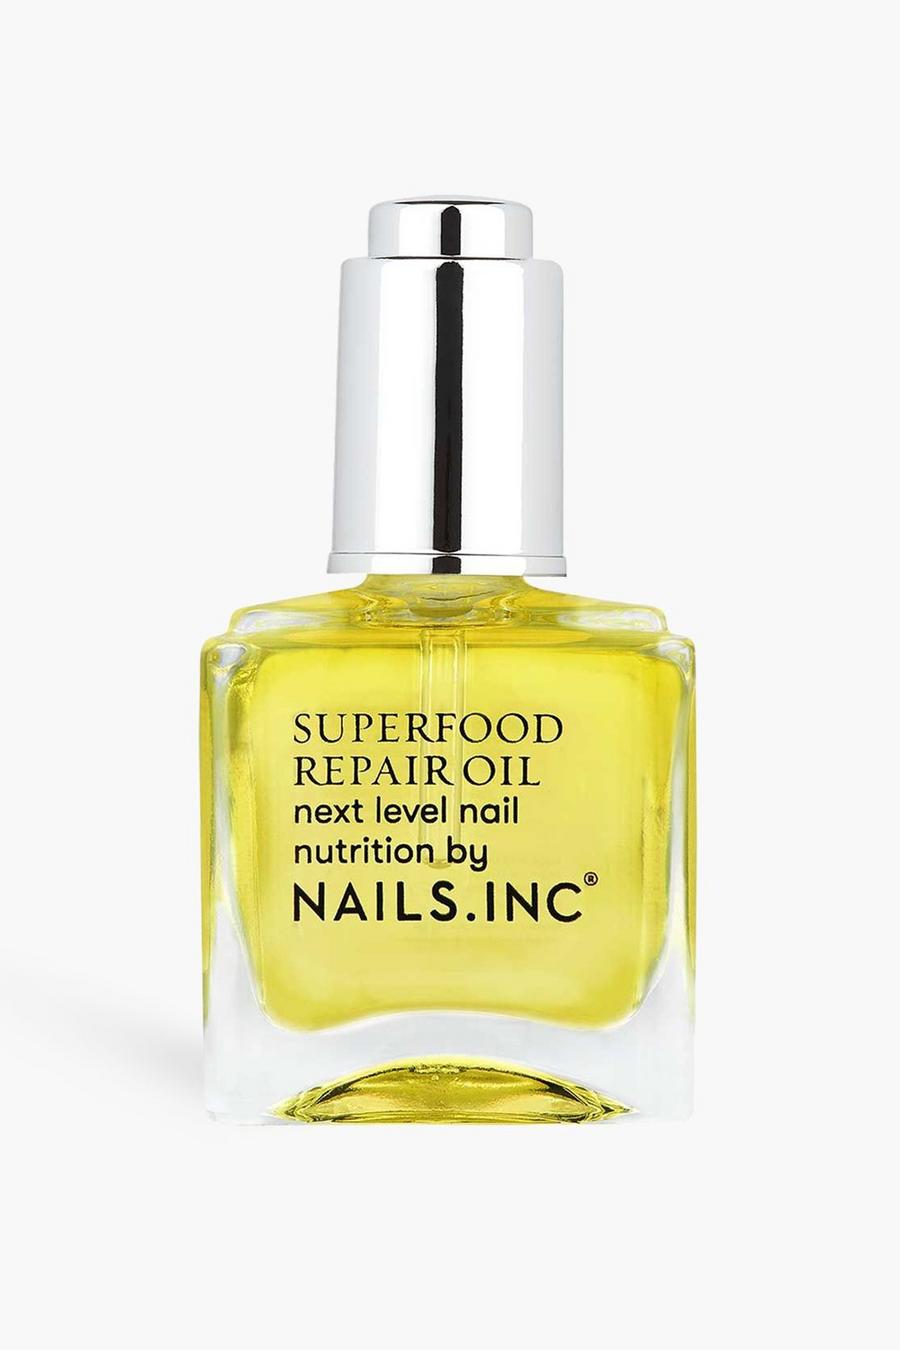 צהוב giallo שמן טיפולי Treatment Superfood Repair Oil של Nails Inc